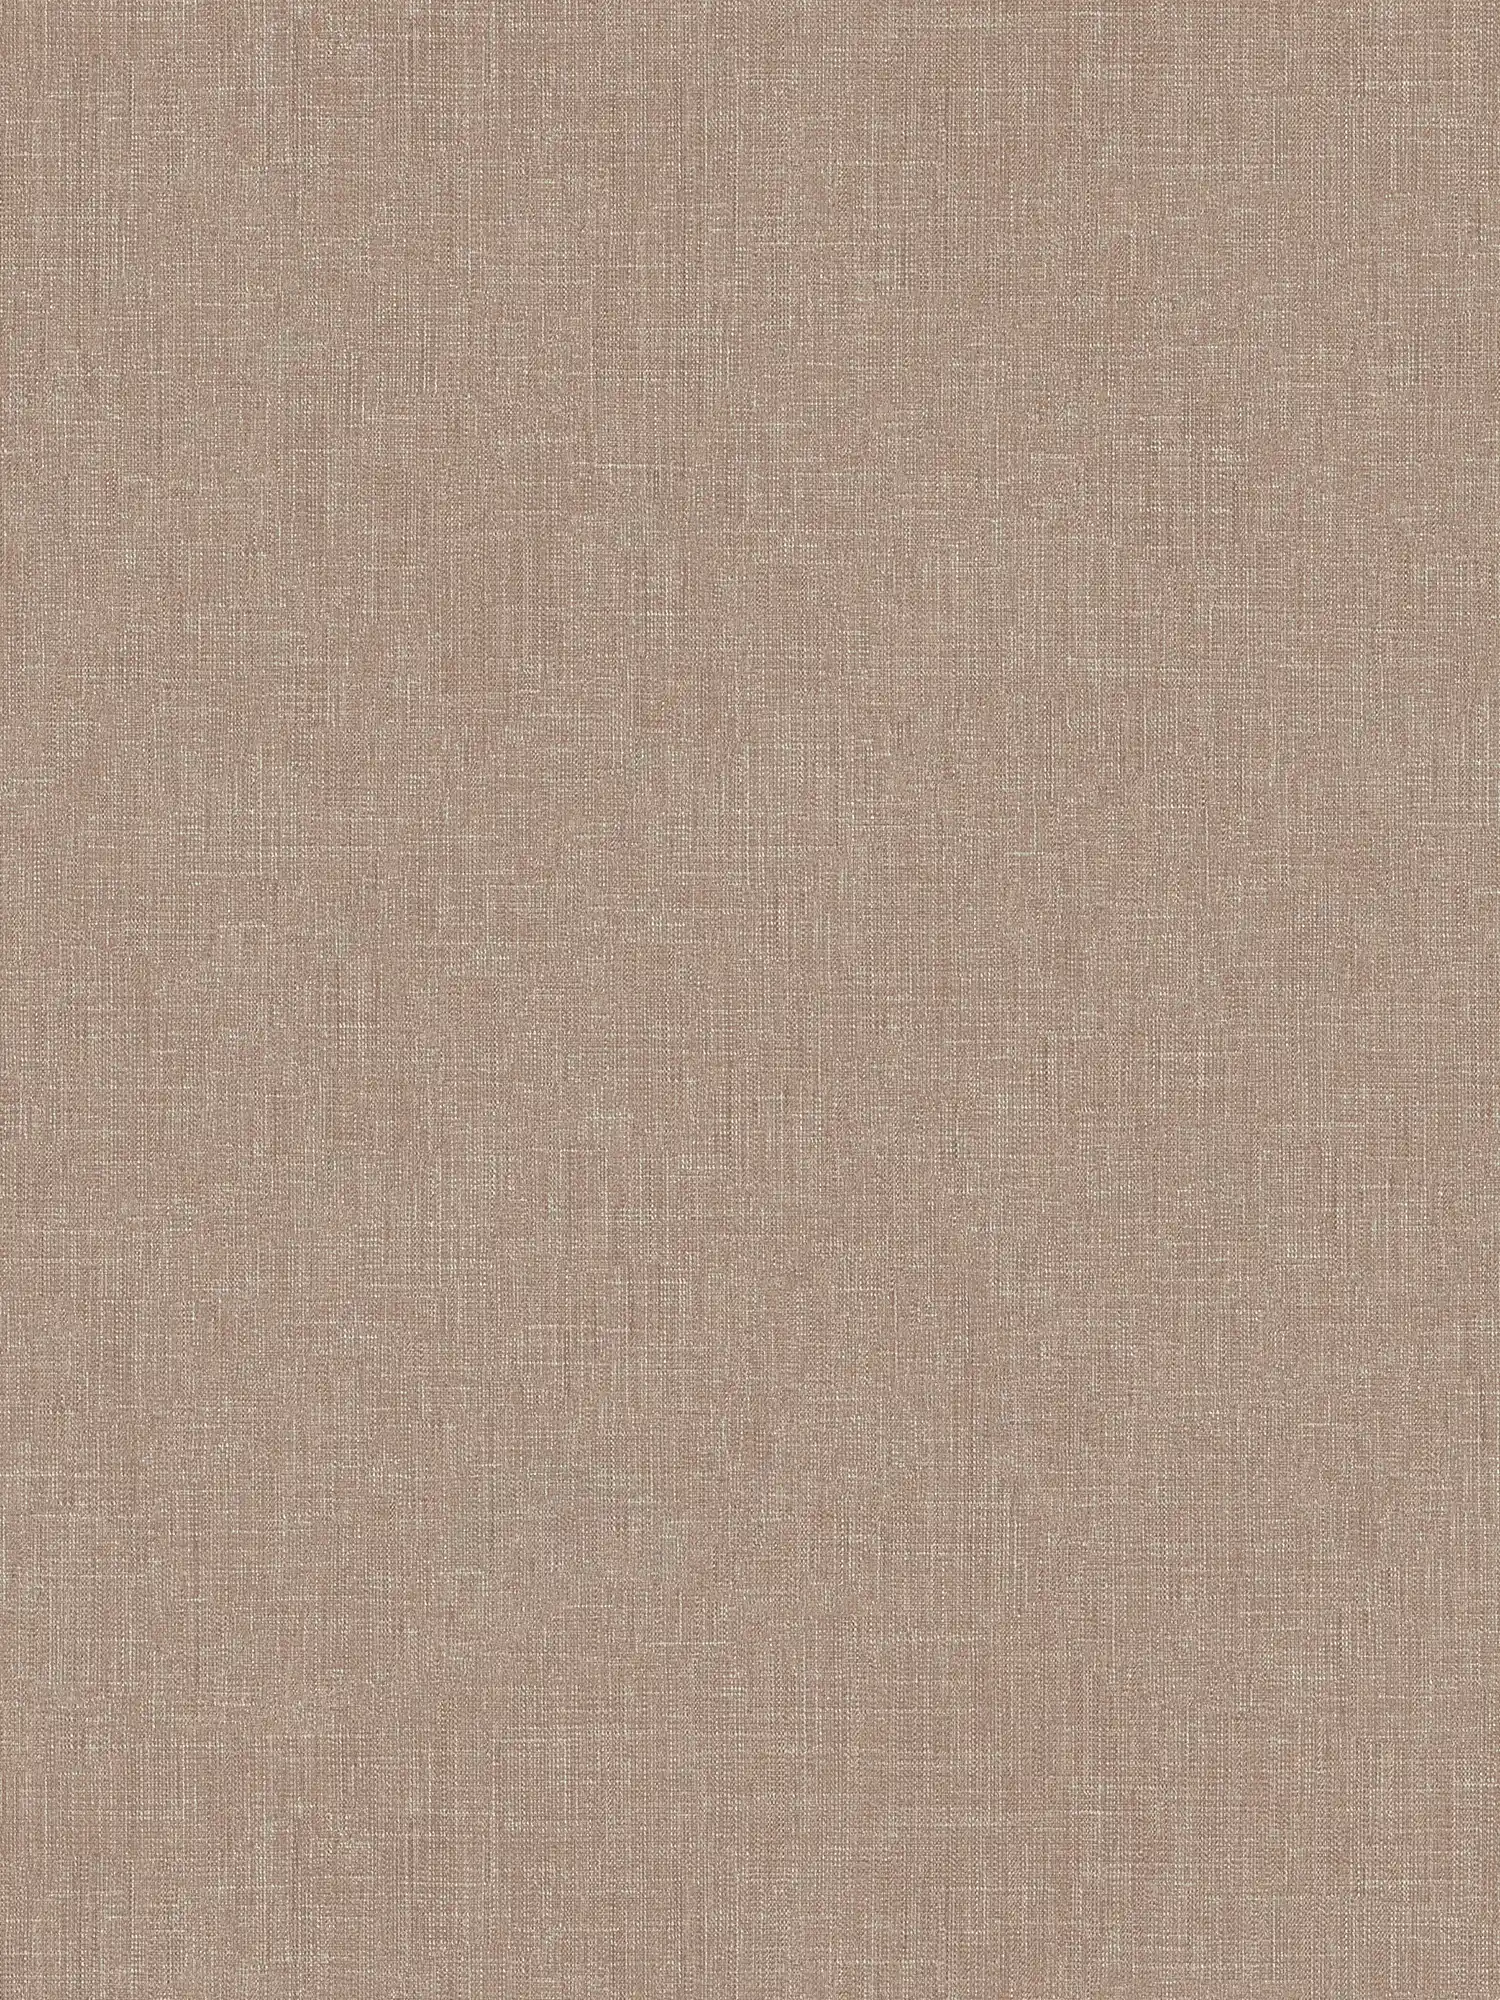 Papel pintado de aspecto de lino marrón moteado con estructura textil
